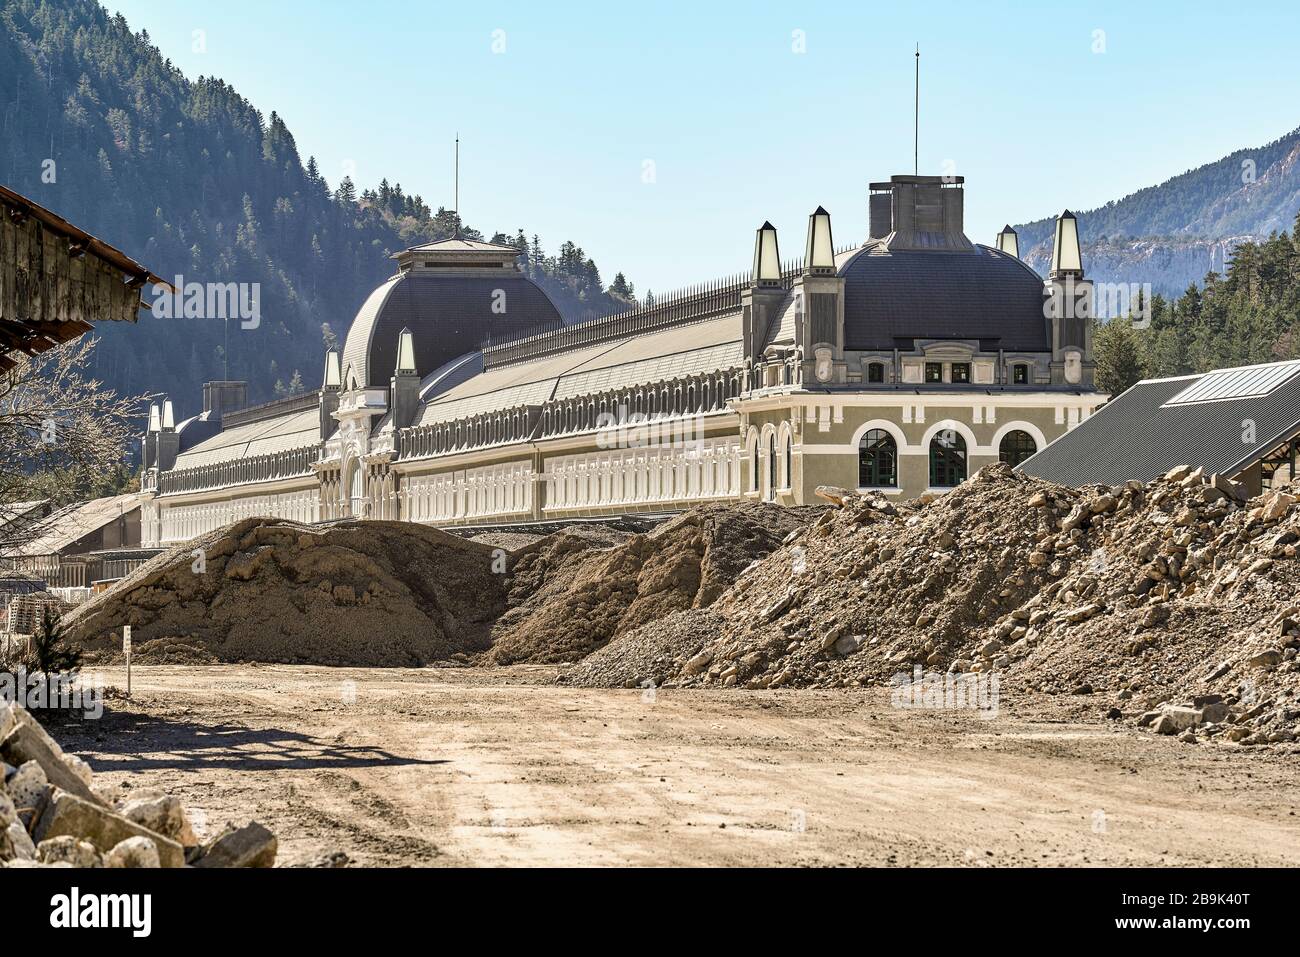 Lavori di restauro della stazione ferroviaria del 20 ° secolo, comune spagnolo di Canfranc, vicino al confine con la Francia. Pozzo di interesse culturale, Spagna Foto Stock